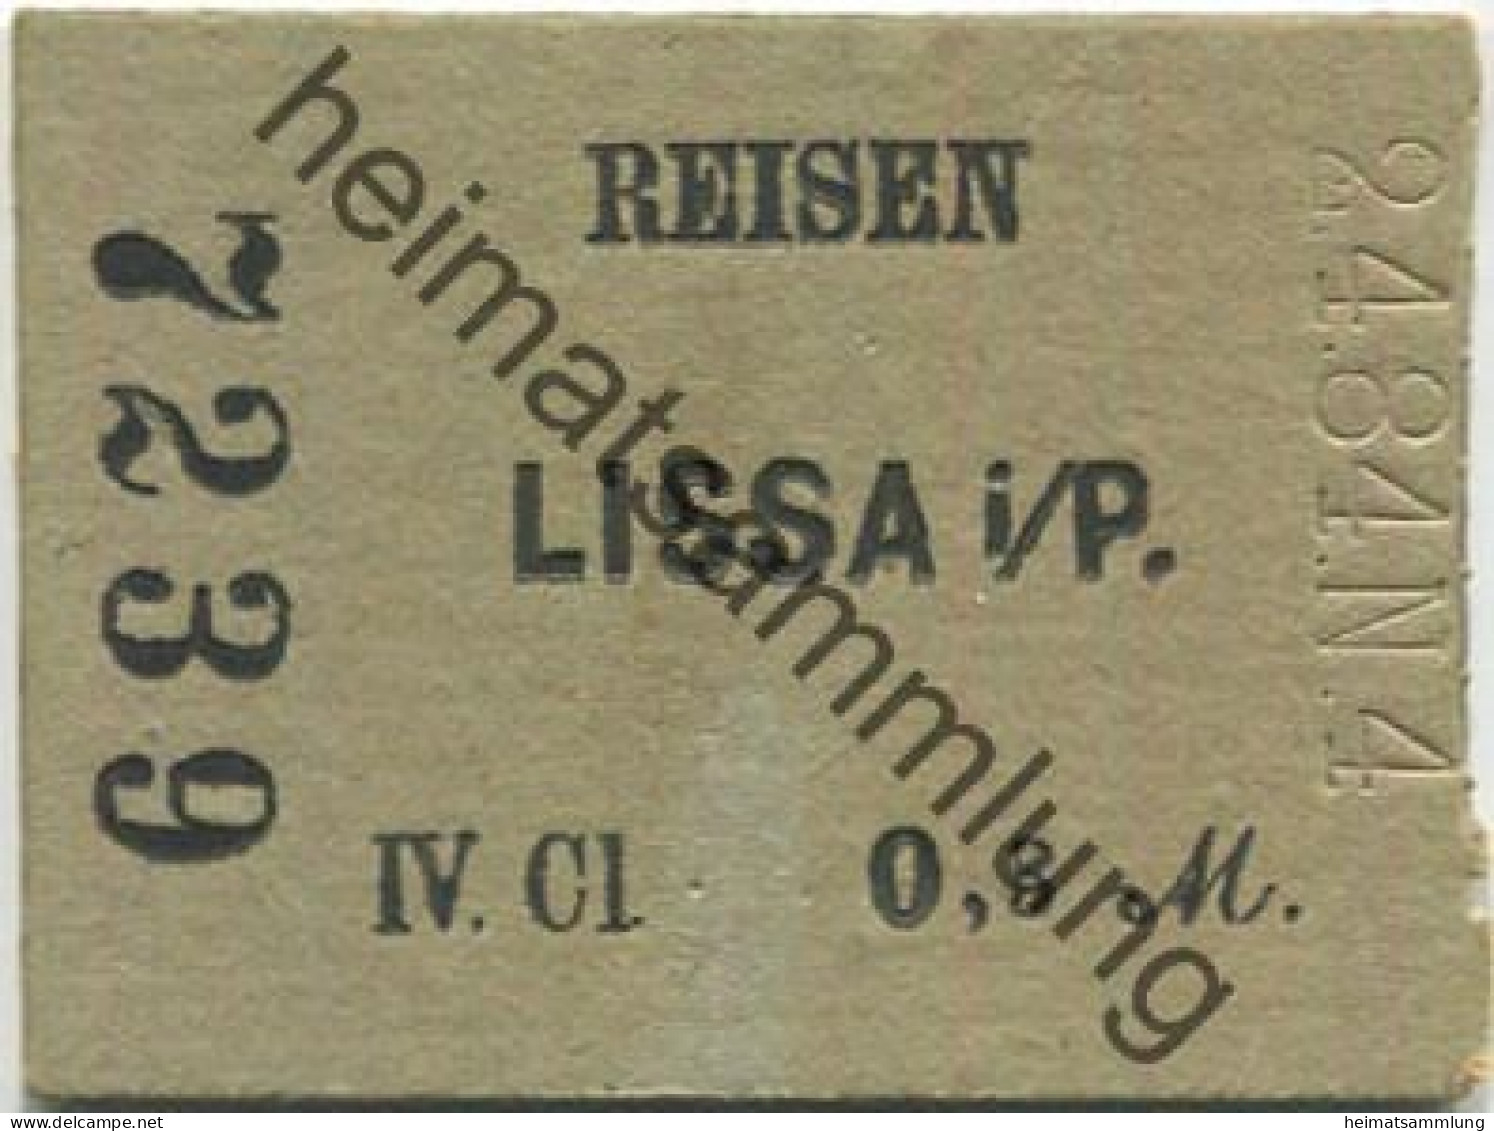 Polen - Reisen - Lissa I. P. - Fahrkarte IV. Cl 0,3 M 2.4.84 - Europa